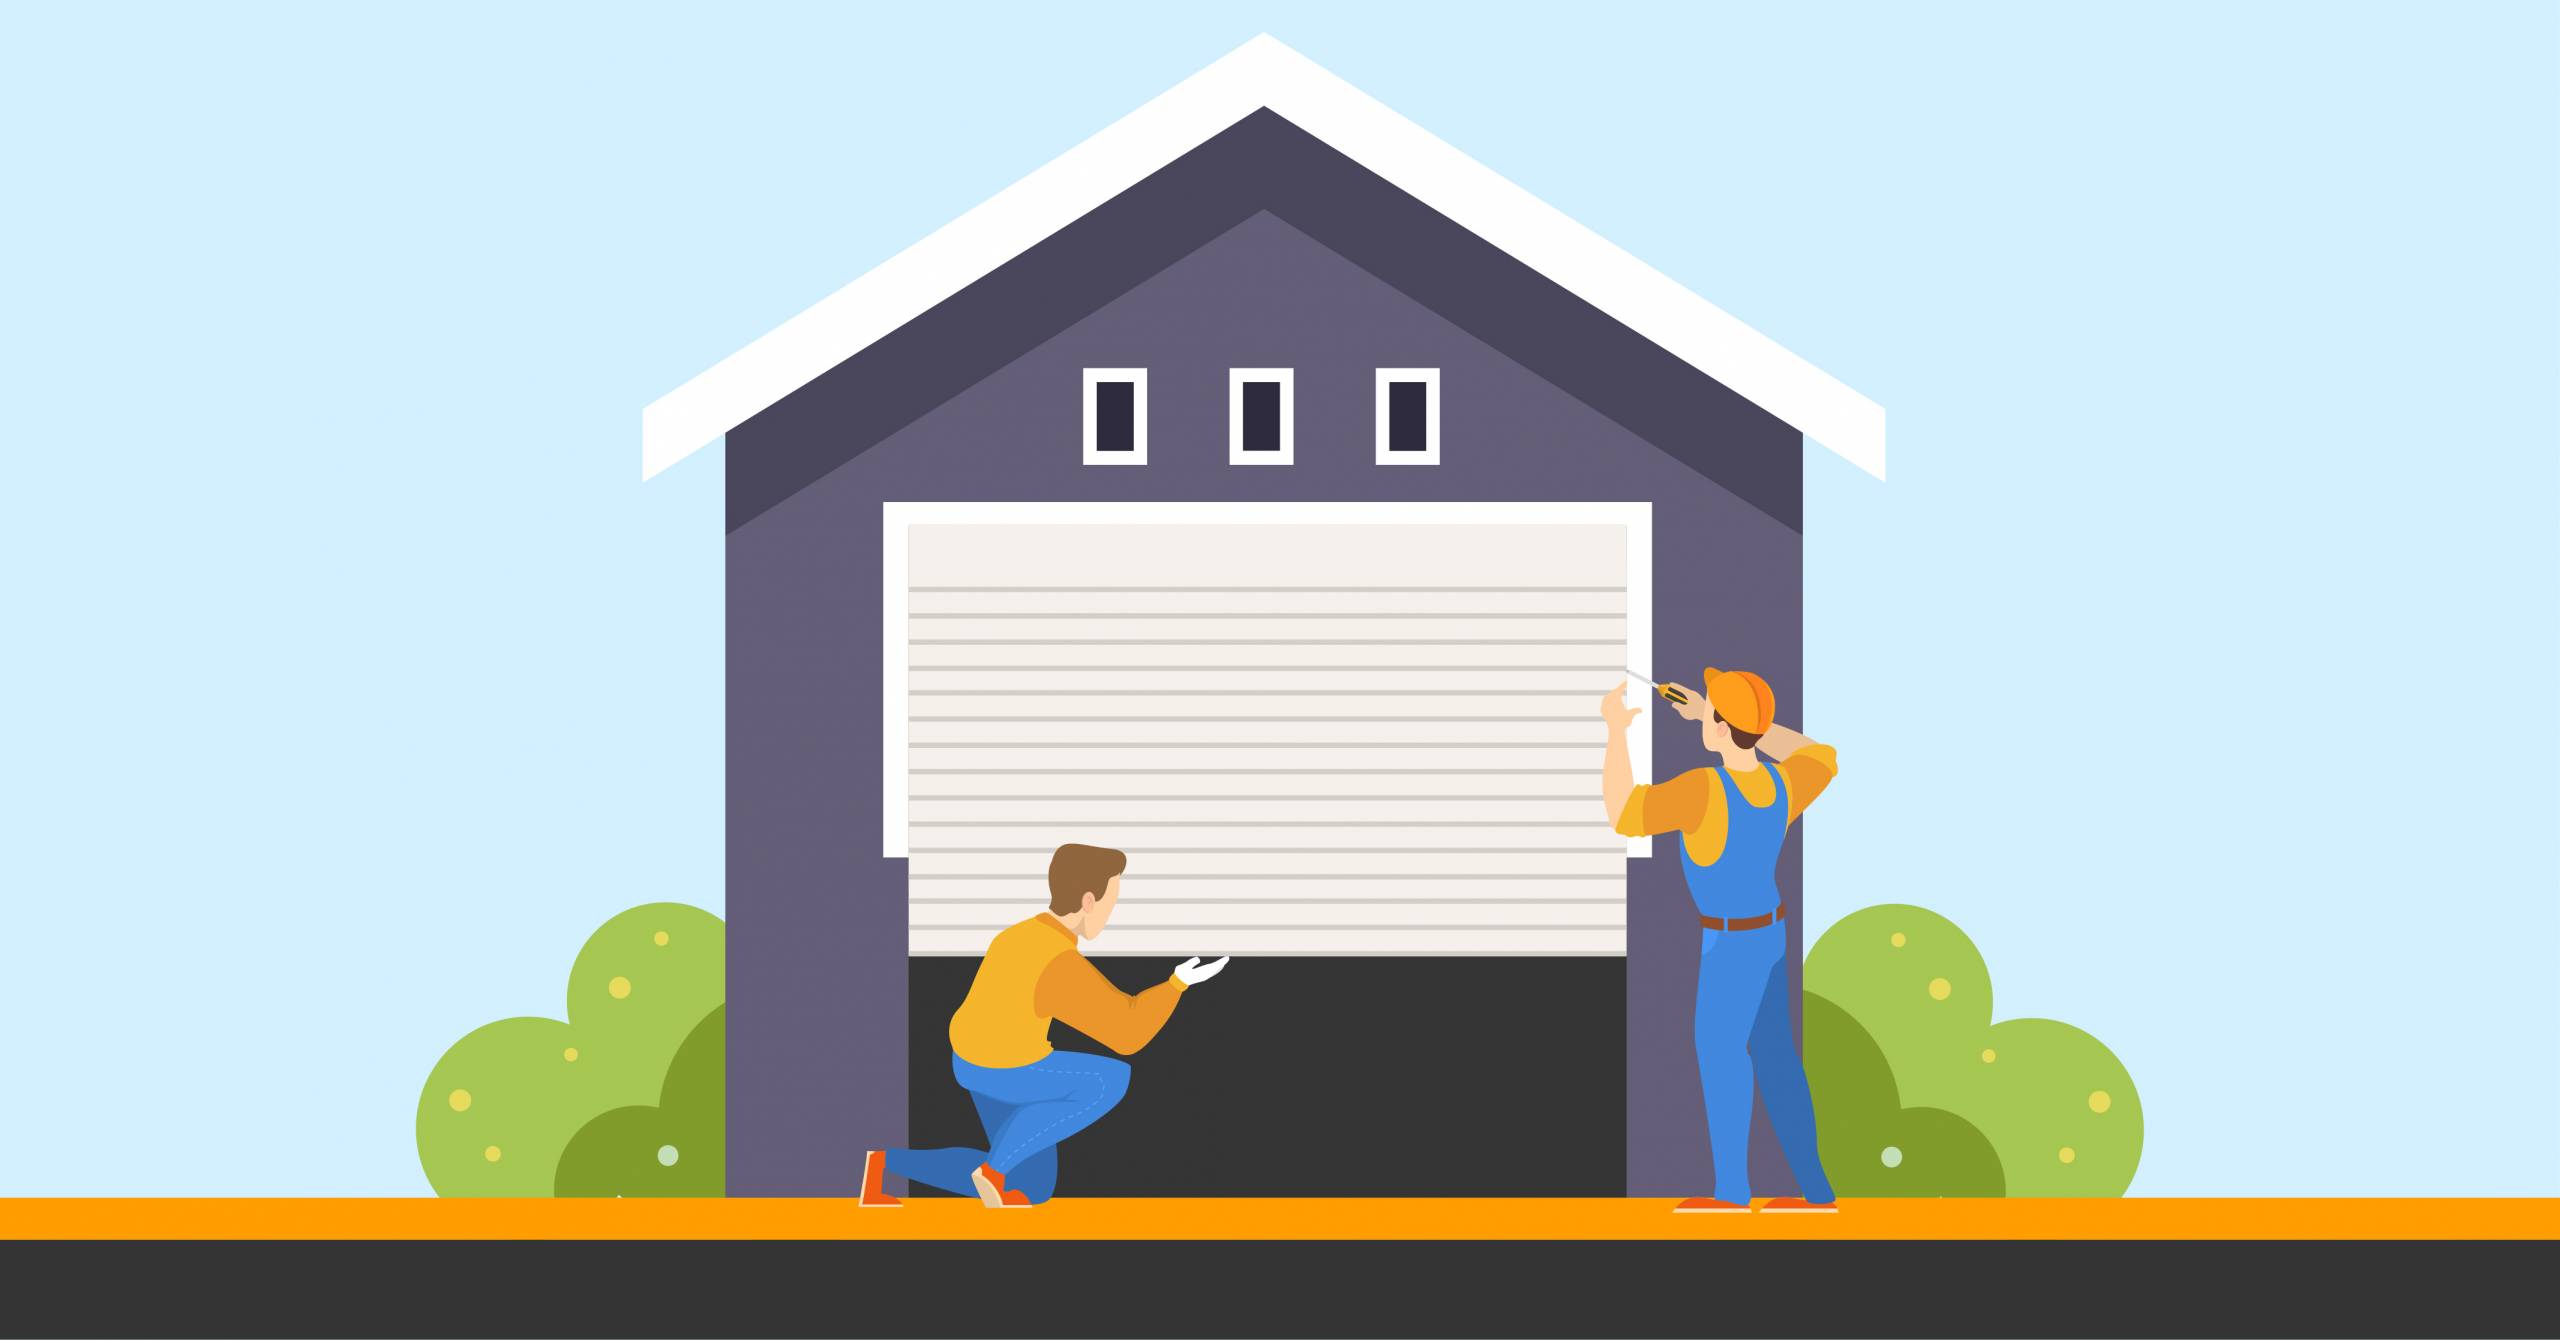 Graphic of workman installing a secure garage door